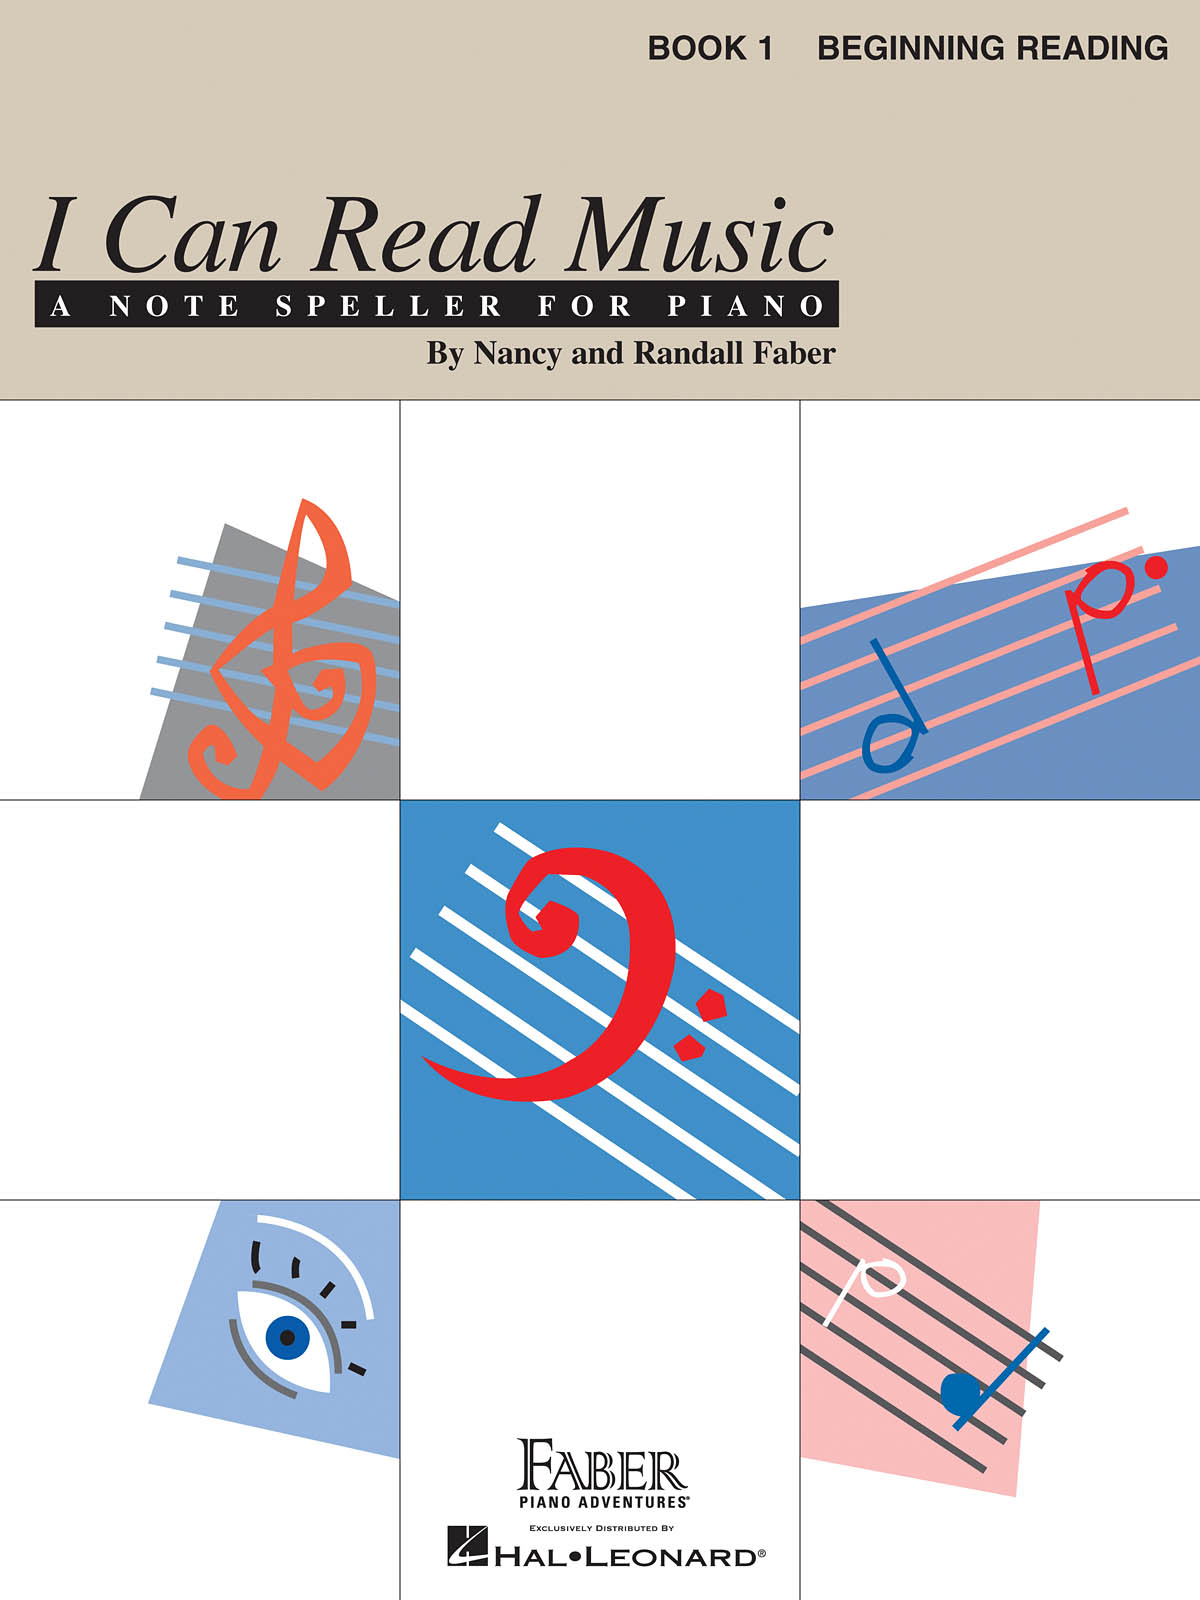 I Can Read Music - Book 1 - Beginning Reading učebnice pro klavír